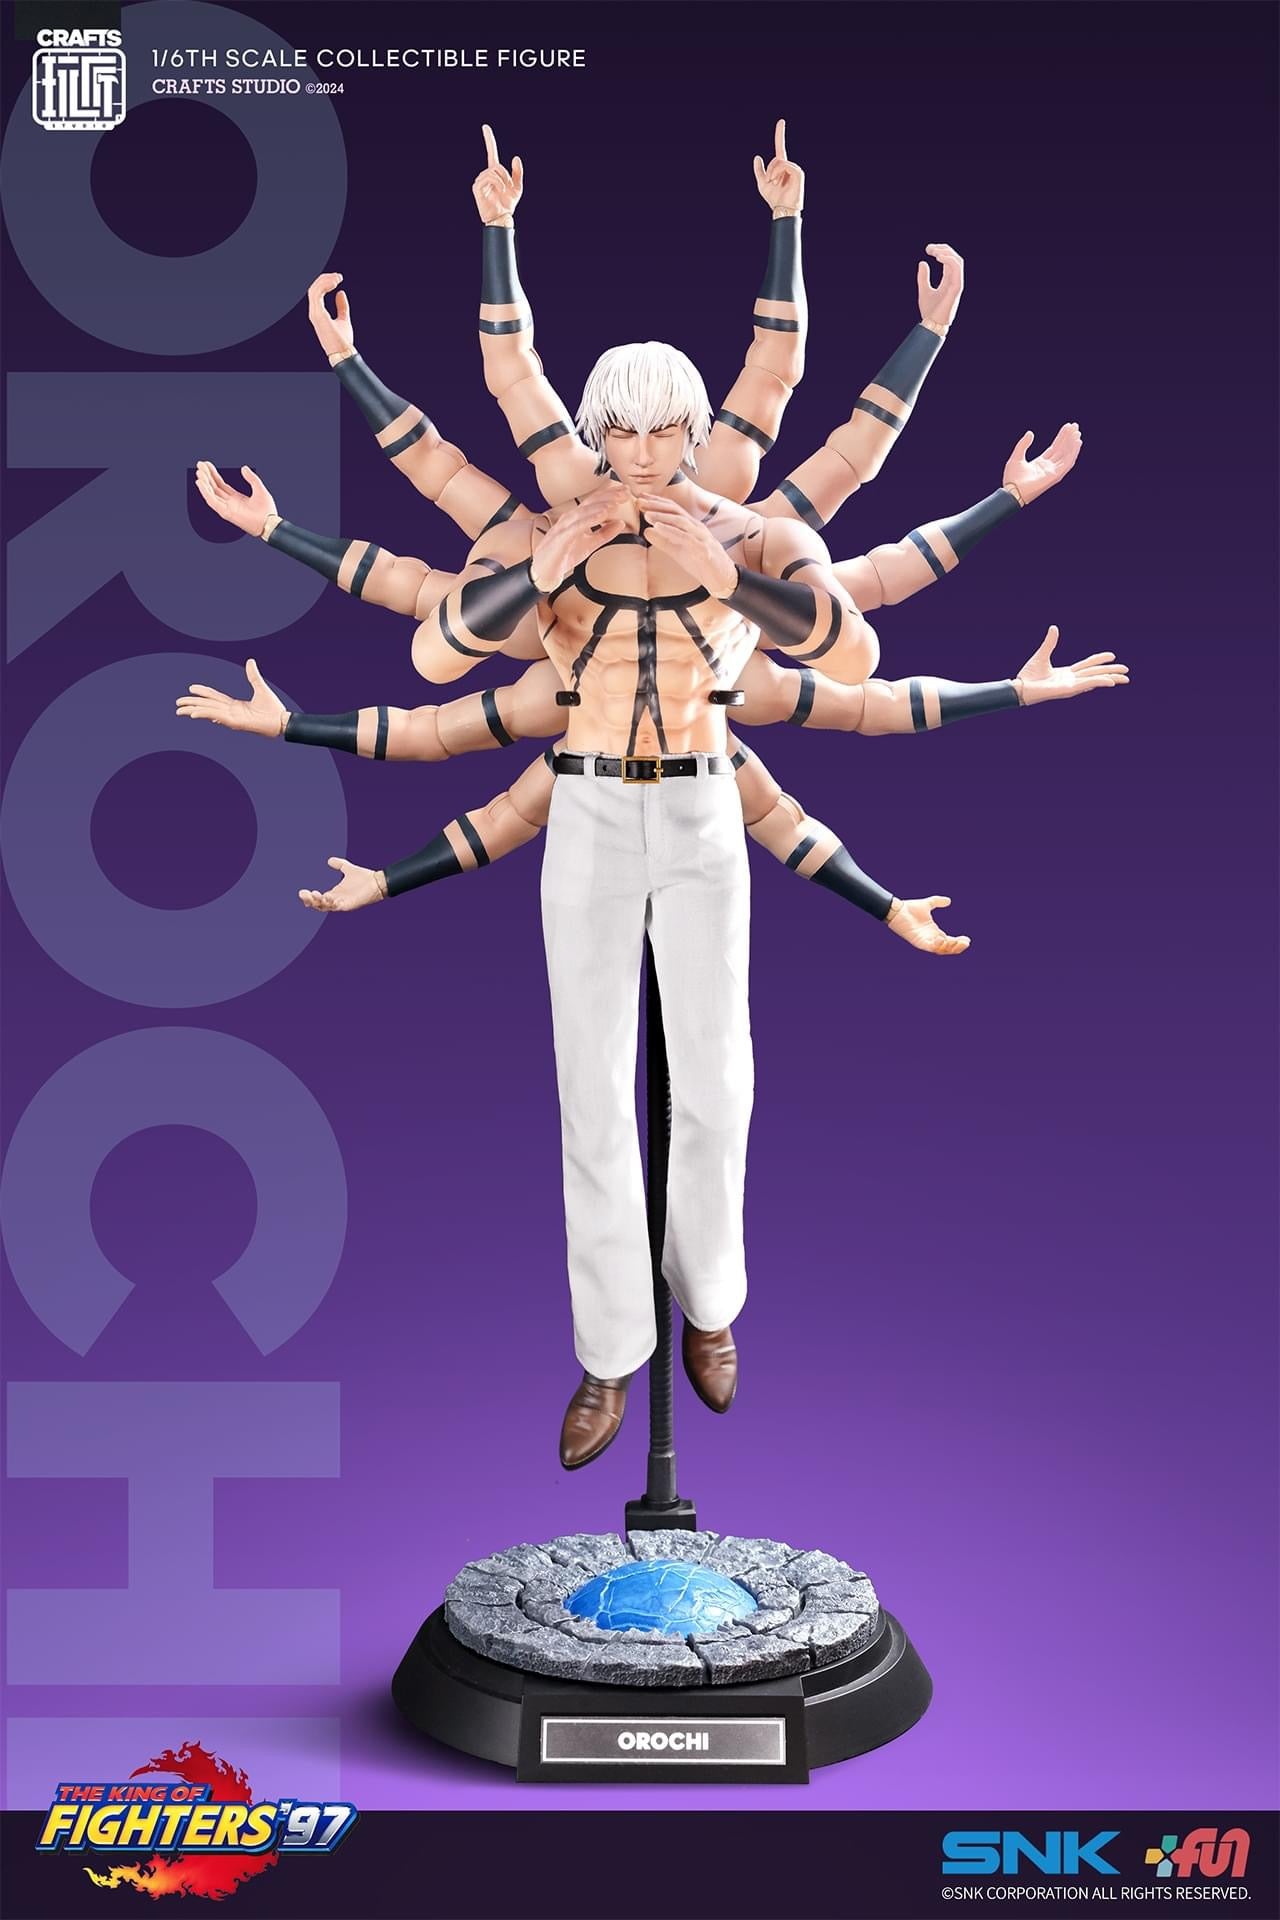 Preventa Figura OROCHI - The King of Fighters 97' marca Crafts Studio CS-021 escala 1/6